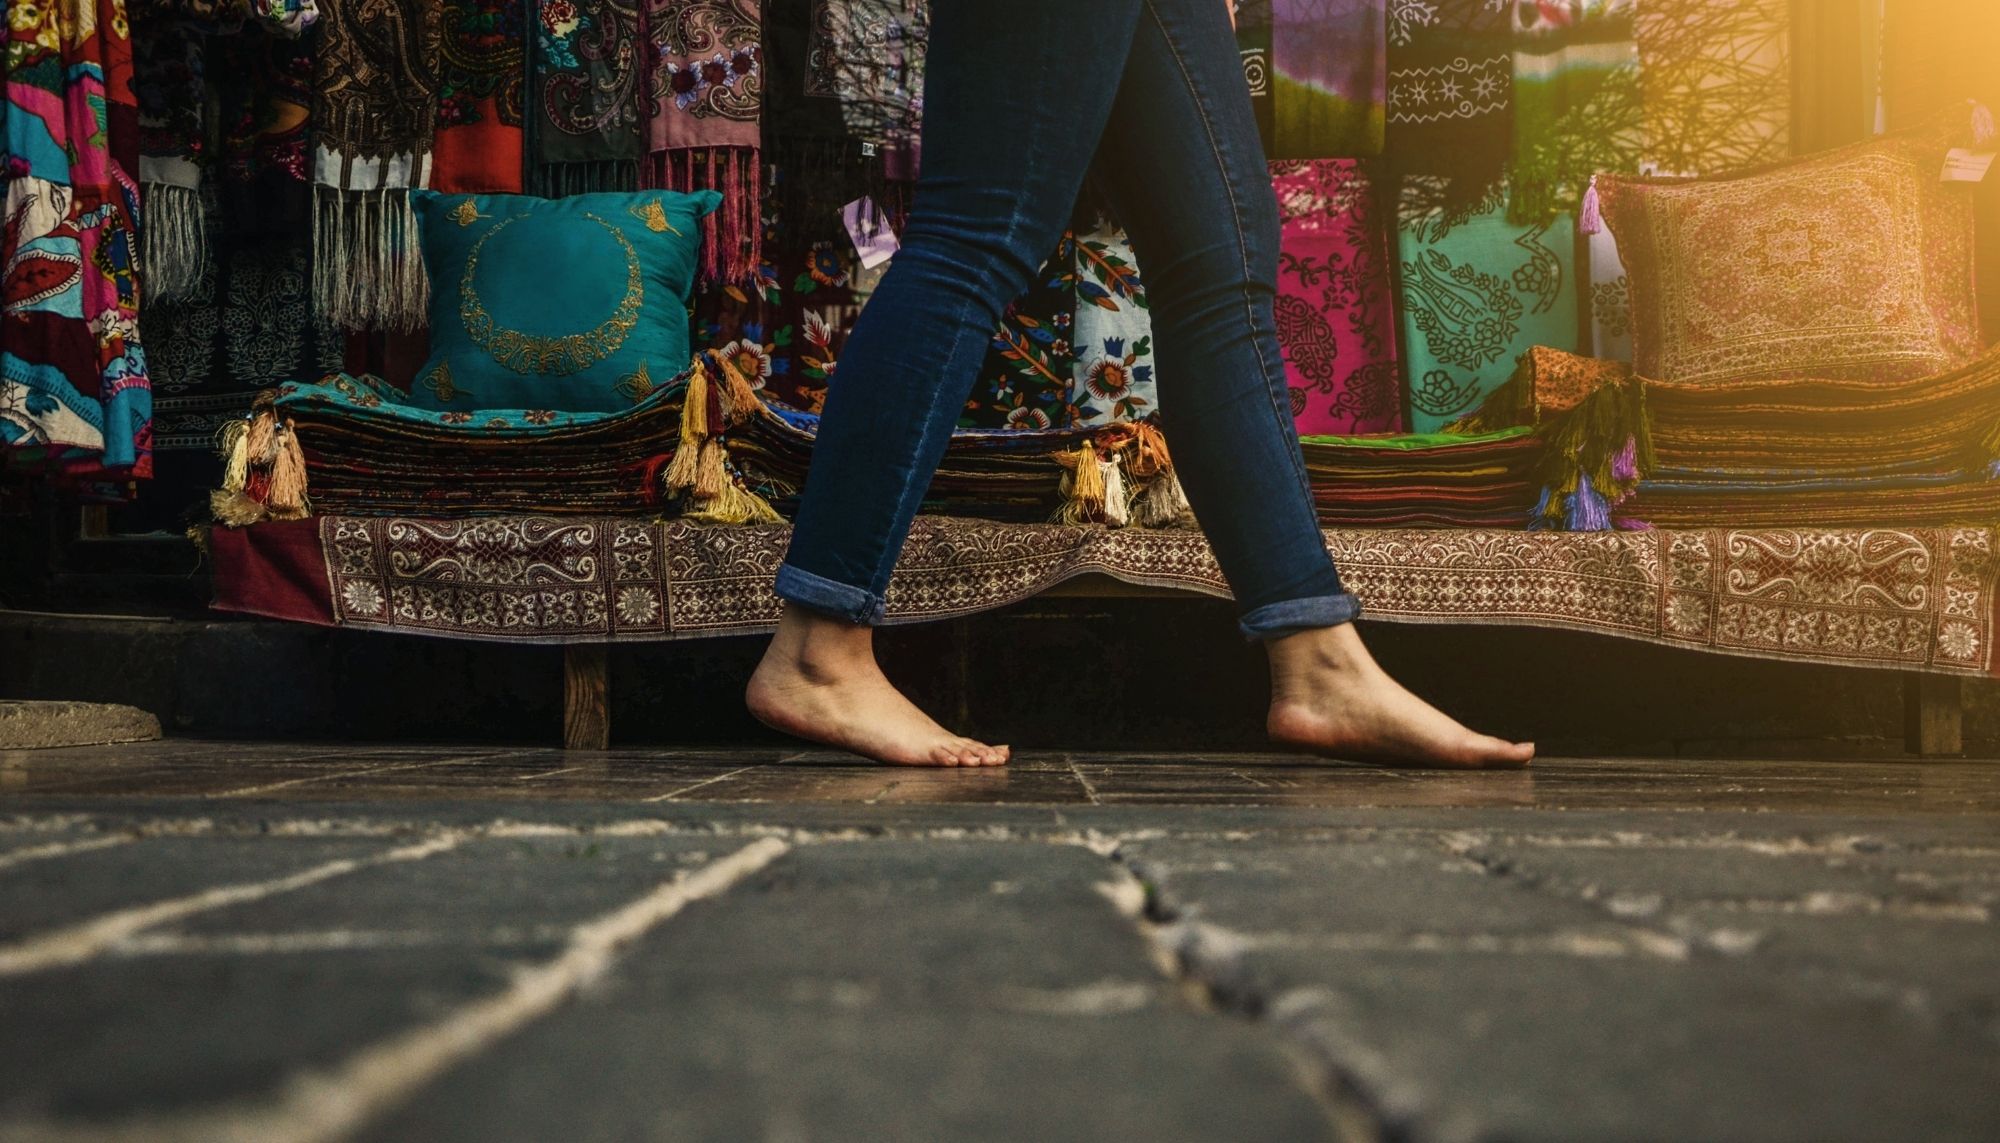 Woman walking barefoot in street